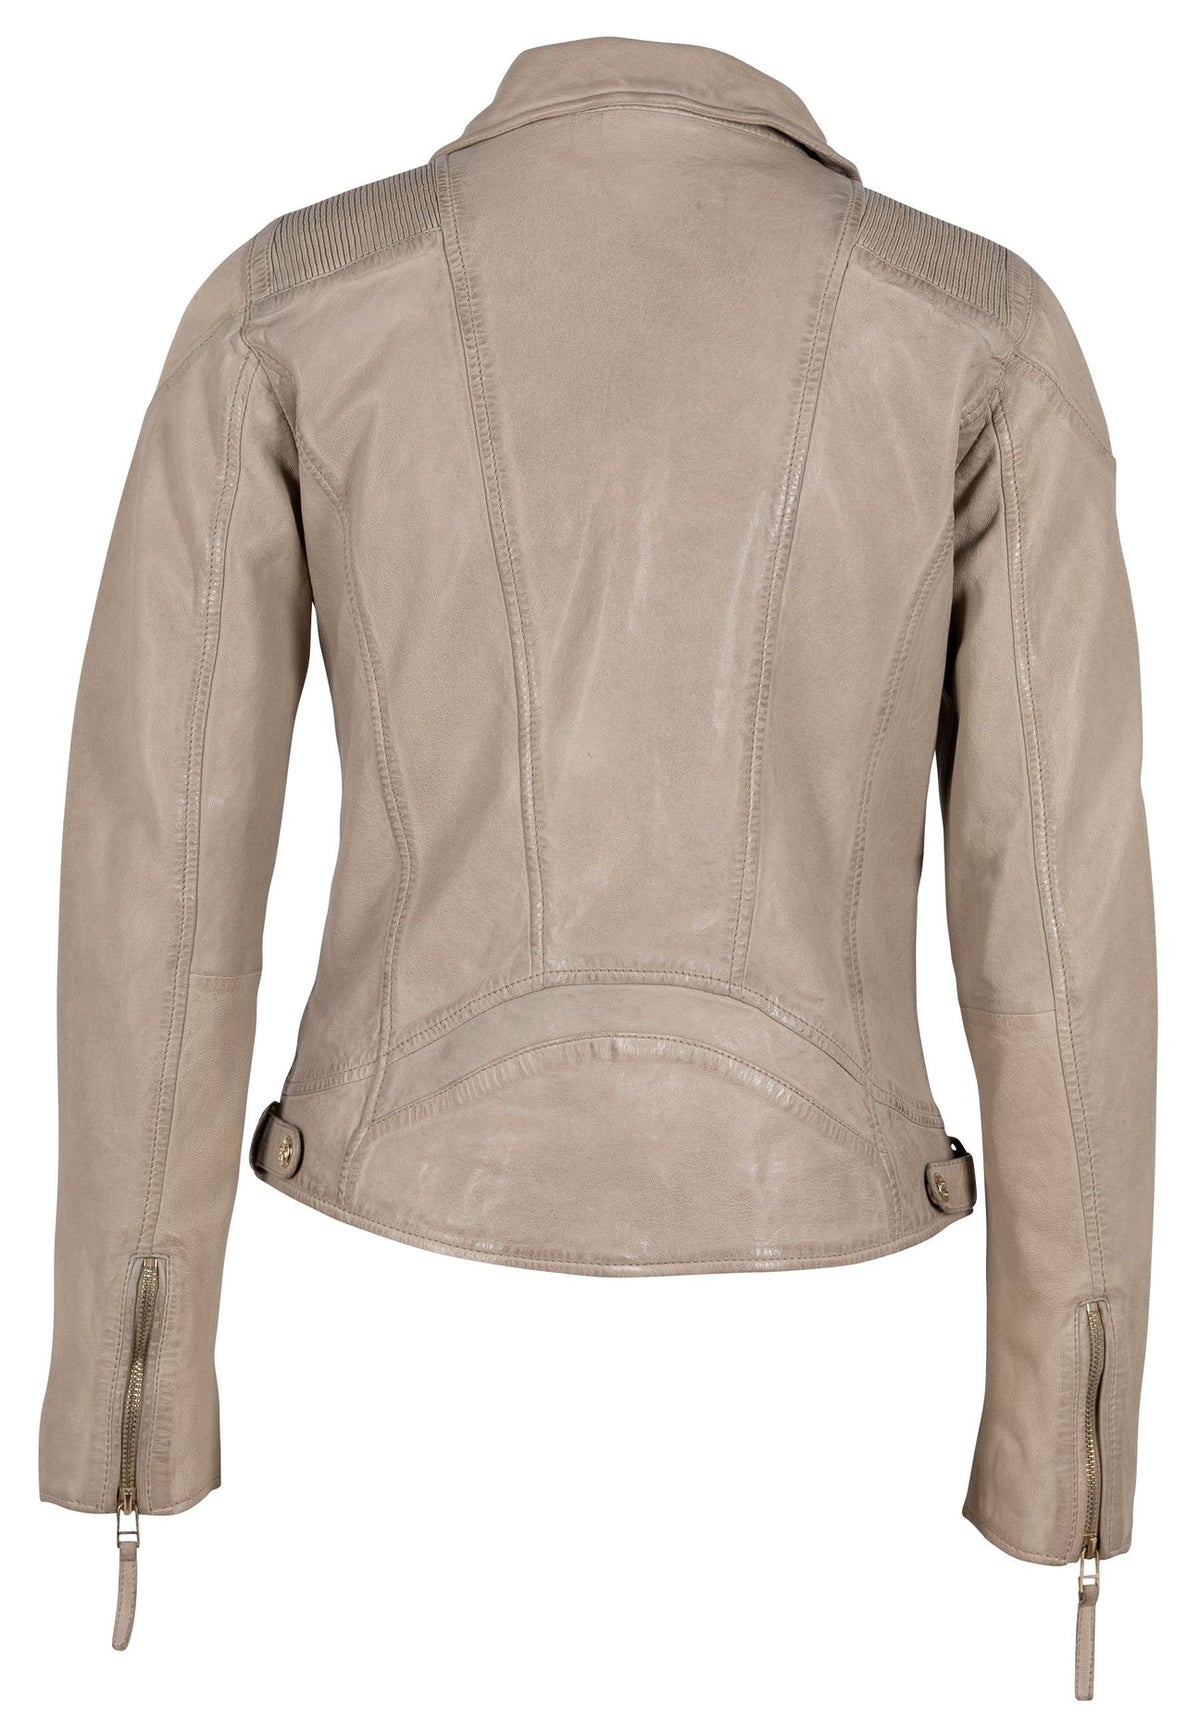 Mauritius Ladies Raizel Leather Jacket, Light Beige - Dudes Boutique